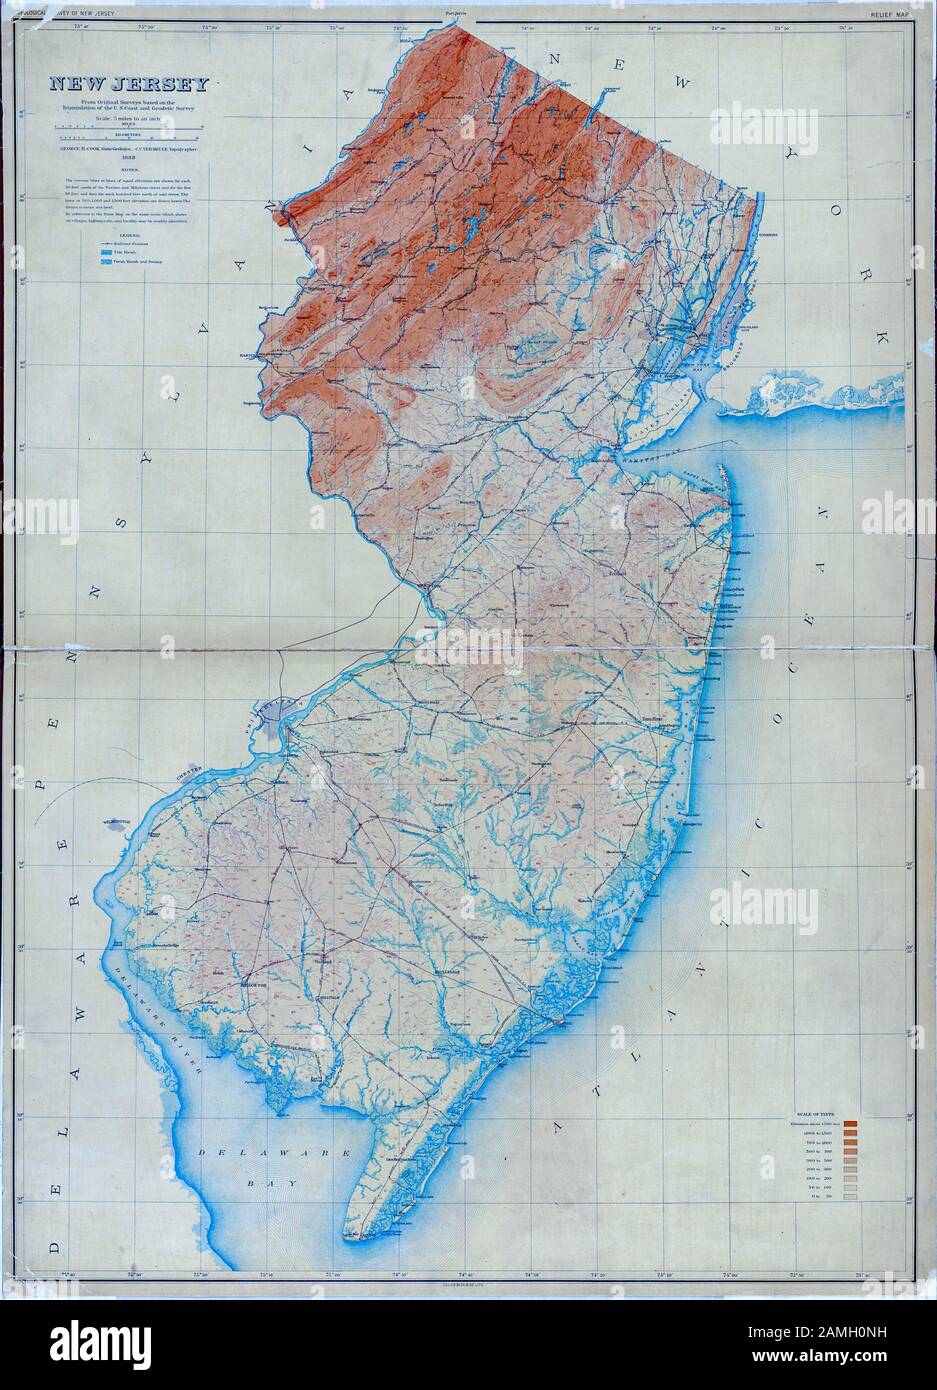 Farbkarte von New Jersey, einem nordöstlichsten US-Staat, der den Atlantik und die Delaware Bay zeigt, veröffentlicht vom New Jersey Geological Survey und Julius Bien and Co, im Jahr 1886. Aus der New York Public Library. () Stockfoto